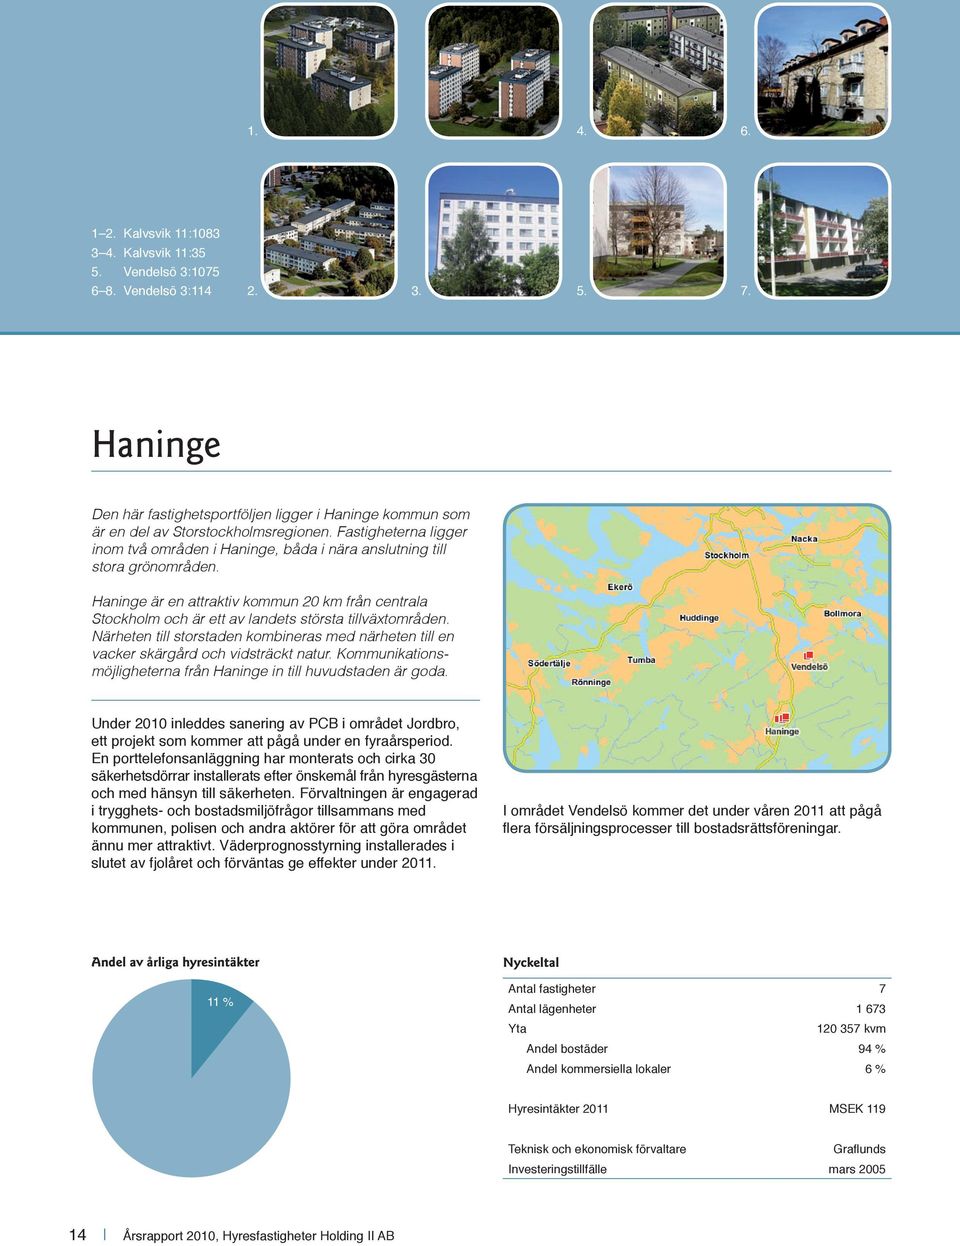 Haninge är en attraktiv kommun 20 km från centrala Stockholm och är ett av landets största tillväxtområden.